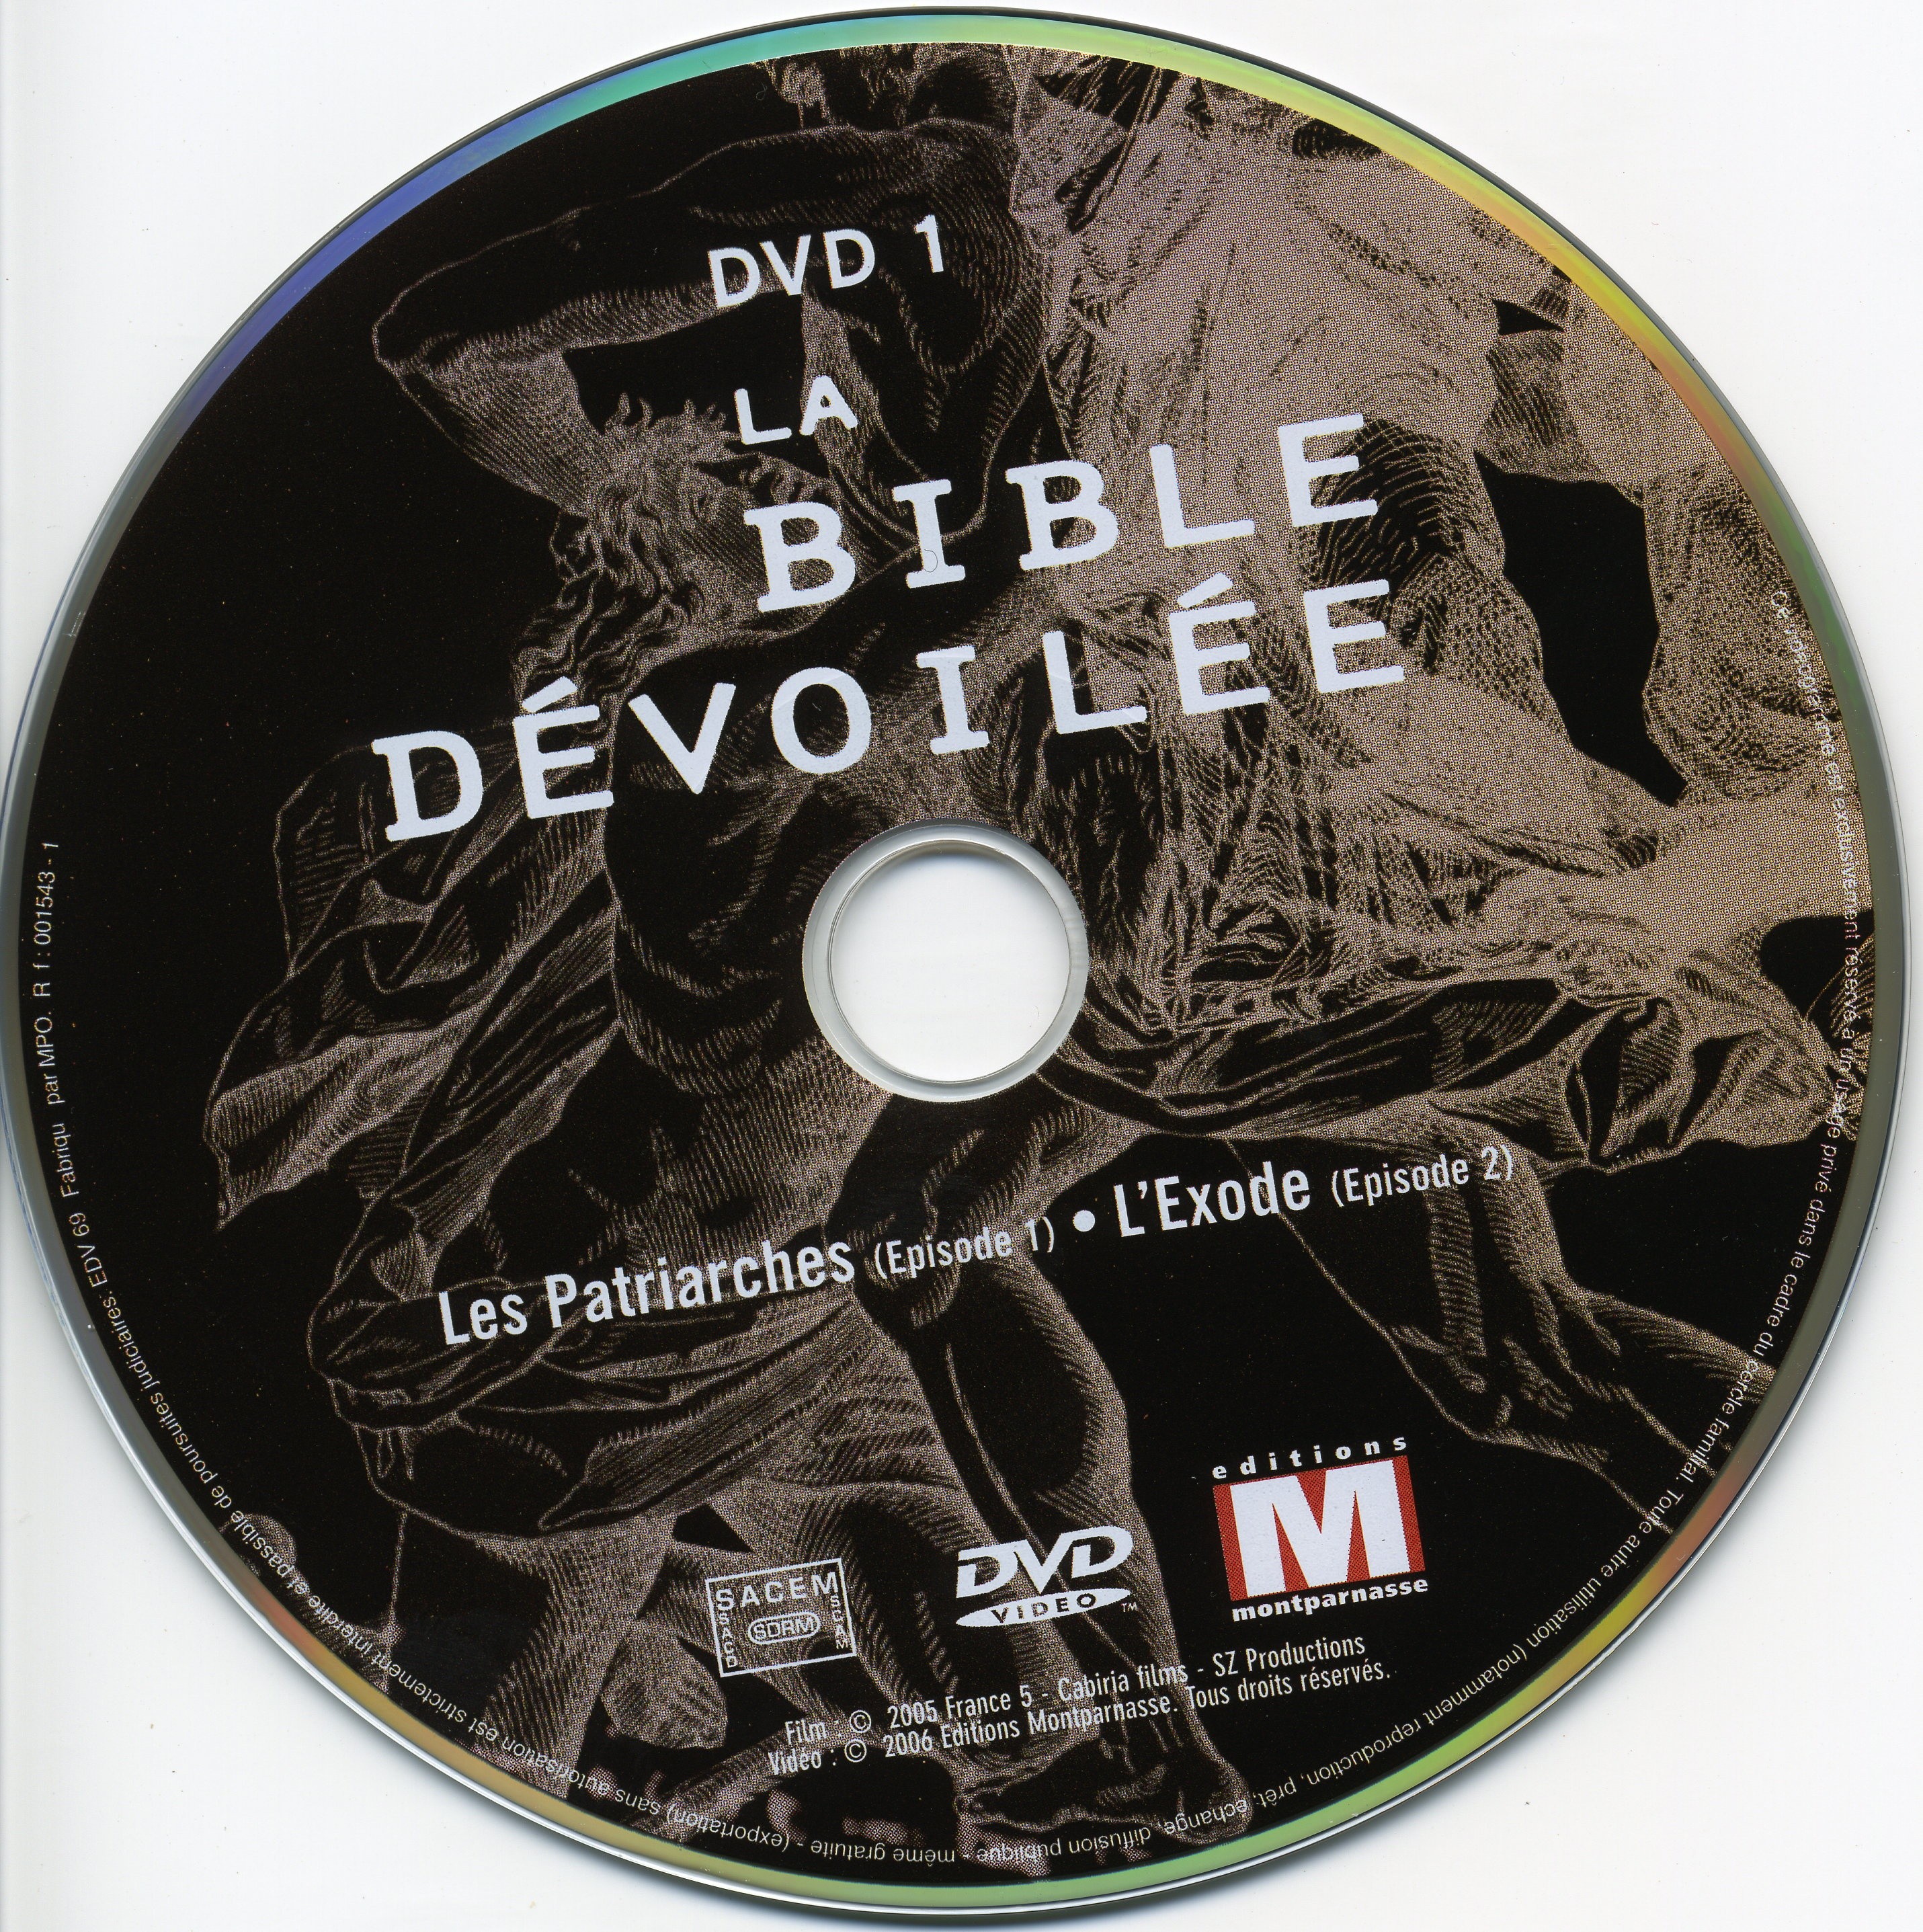 La bible devoile DISC 1